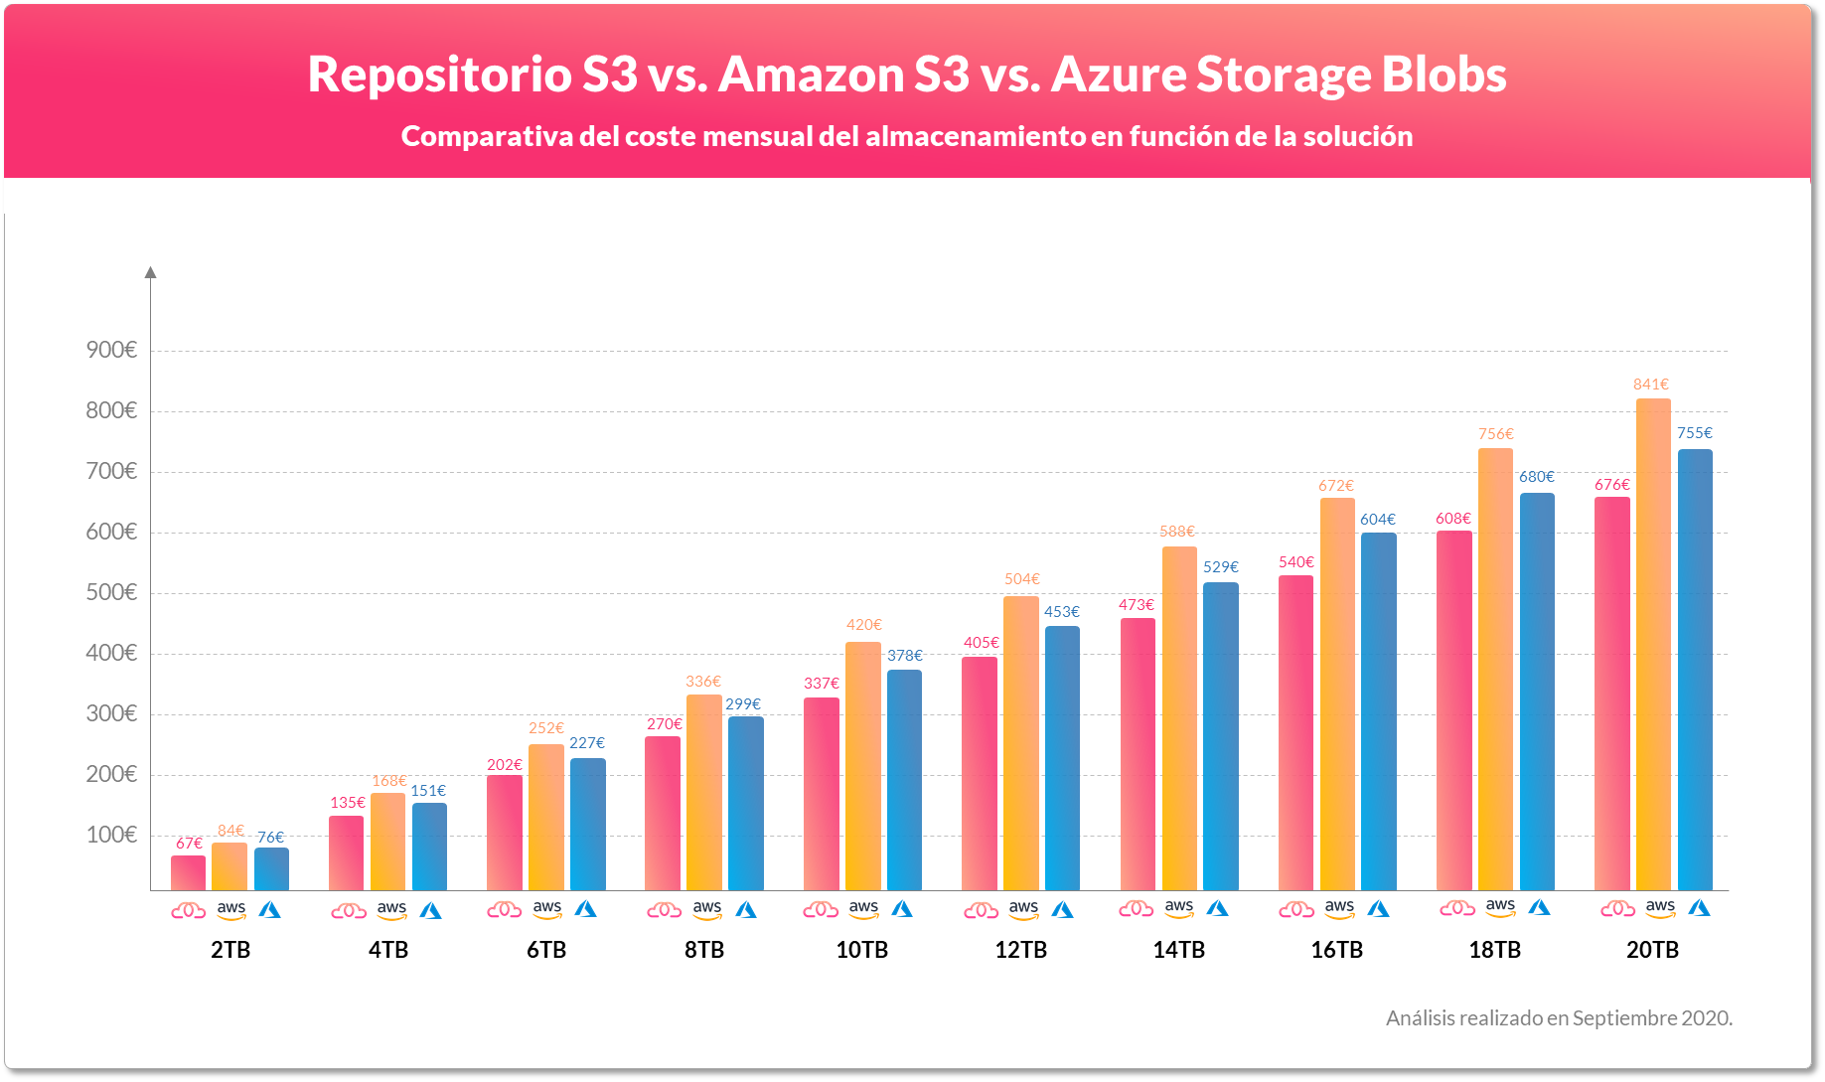 Comparação do custo mensal por TB para Repositório S3 vs. Amazon S3 vs. Azure Storage Blobs.